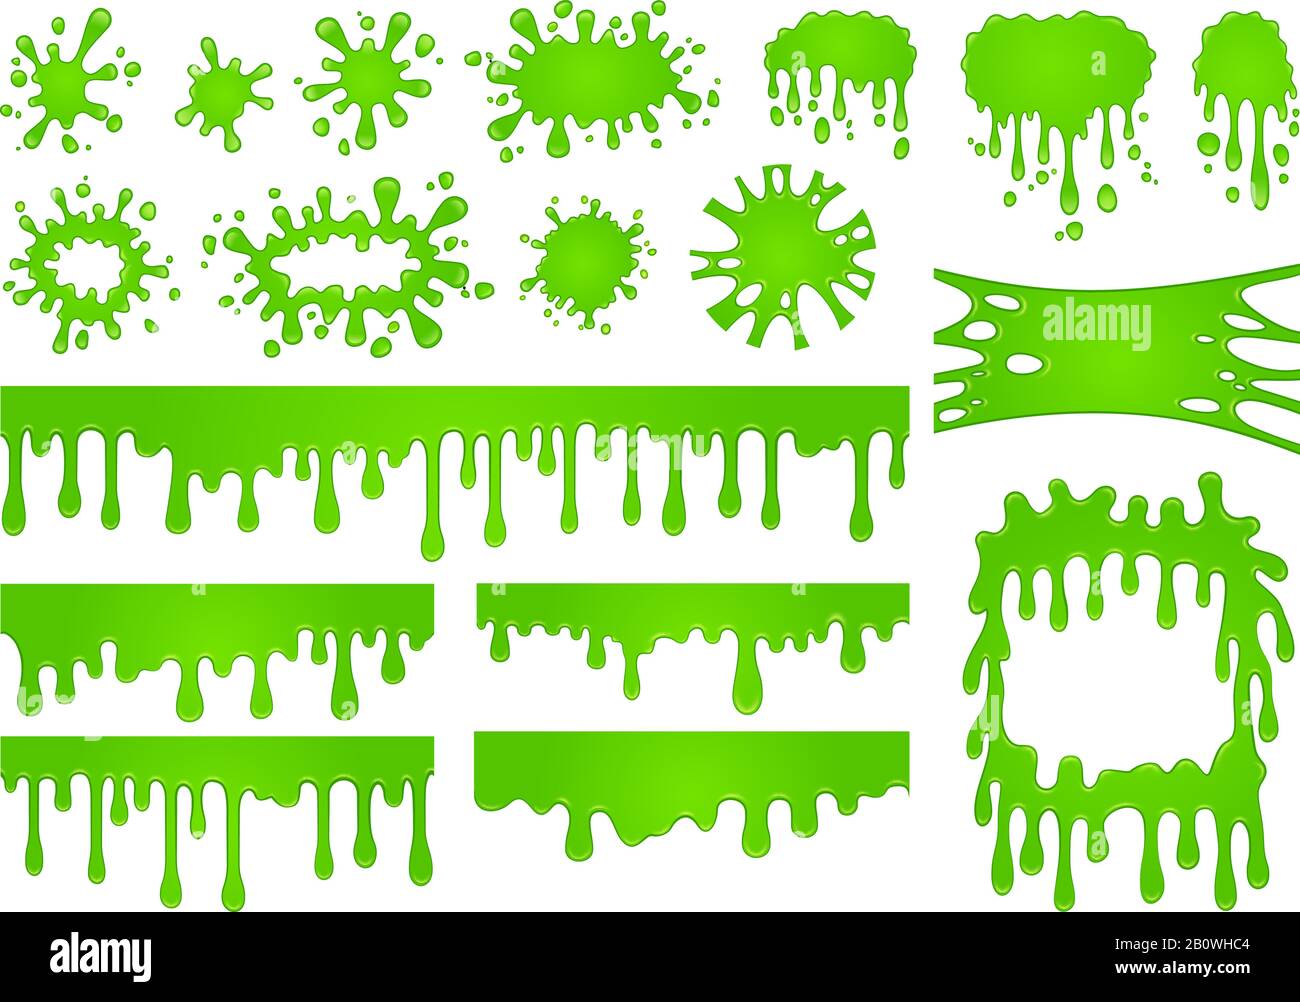 Cartoon Liquid Slime. Grüne Goo-Farbtropfen, spritziger Splash-Rand und gruseliger halloween-fleck-Vektorsatz Stock Vektor